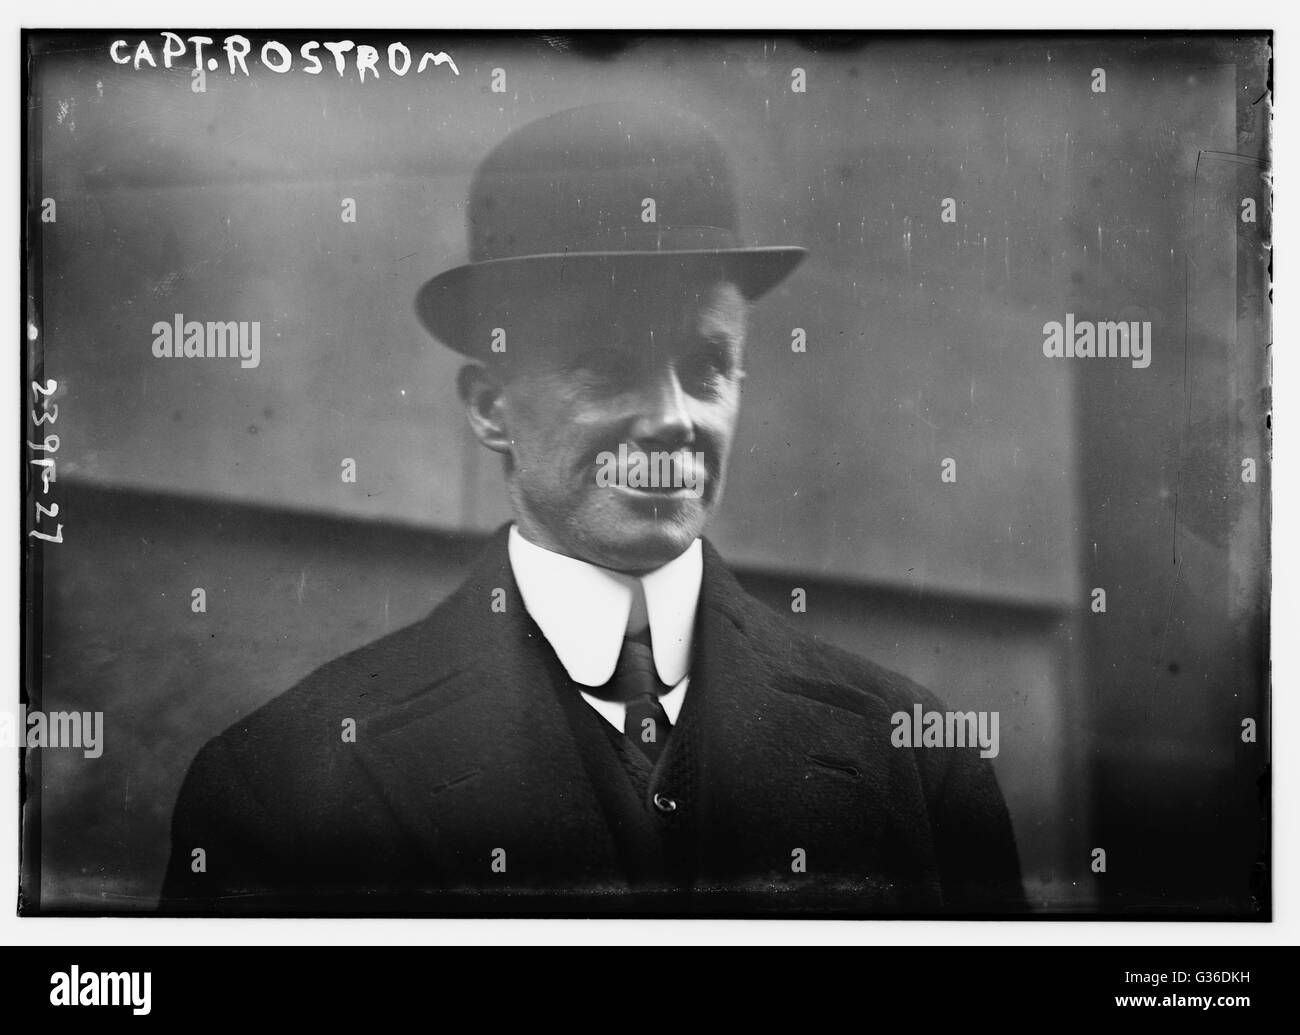 Captain Arthur Henry Rostron (auf dem Foto ist nicht Rostrom, als es geschrieben) von der CARPATHIA, der Mann, der die Überlebenden der TITANIC Untergang gerettet. Dieses Foto wurde nach Untersuchung Senatsausschuss treffen in Washington, DC. 1912. Stockfoto